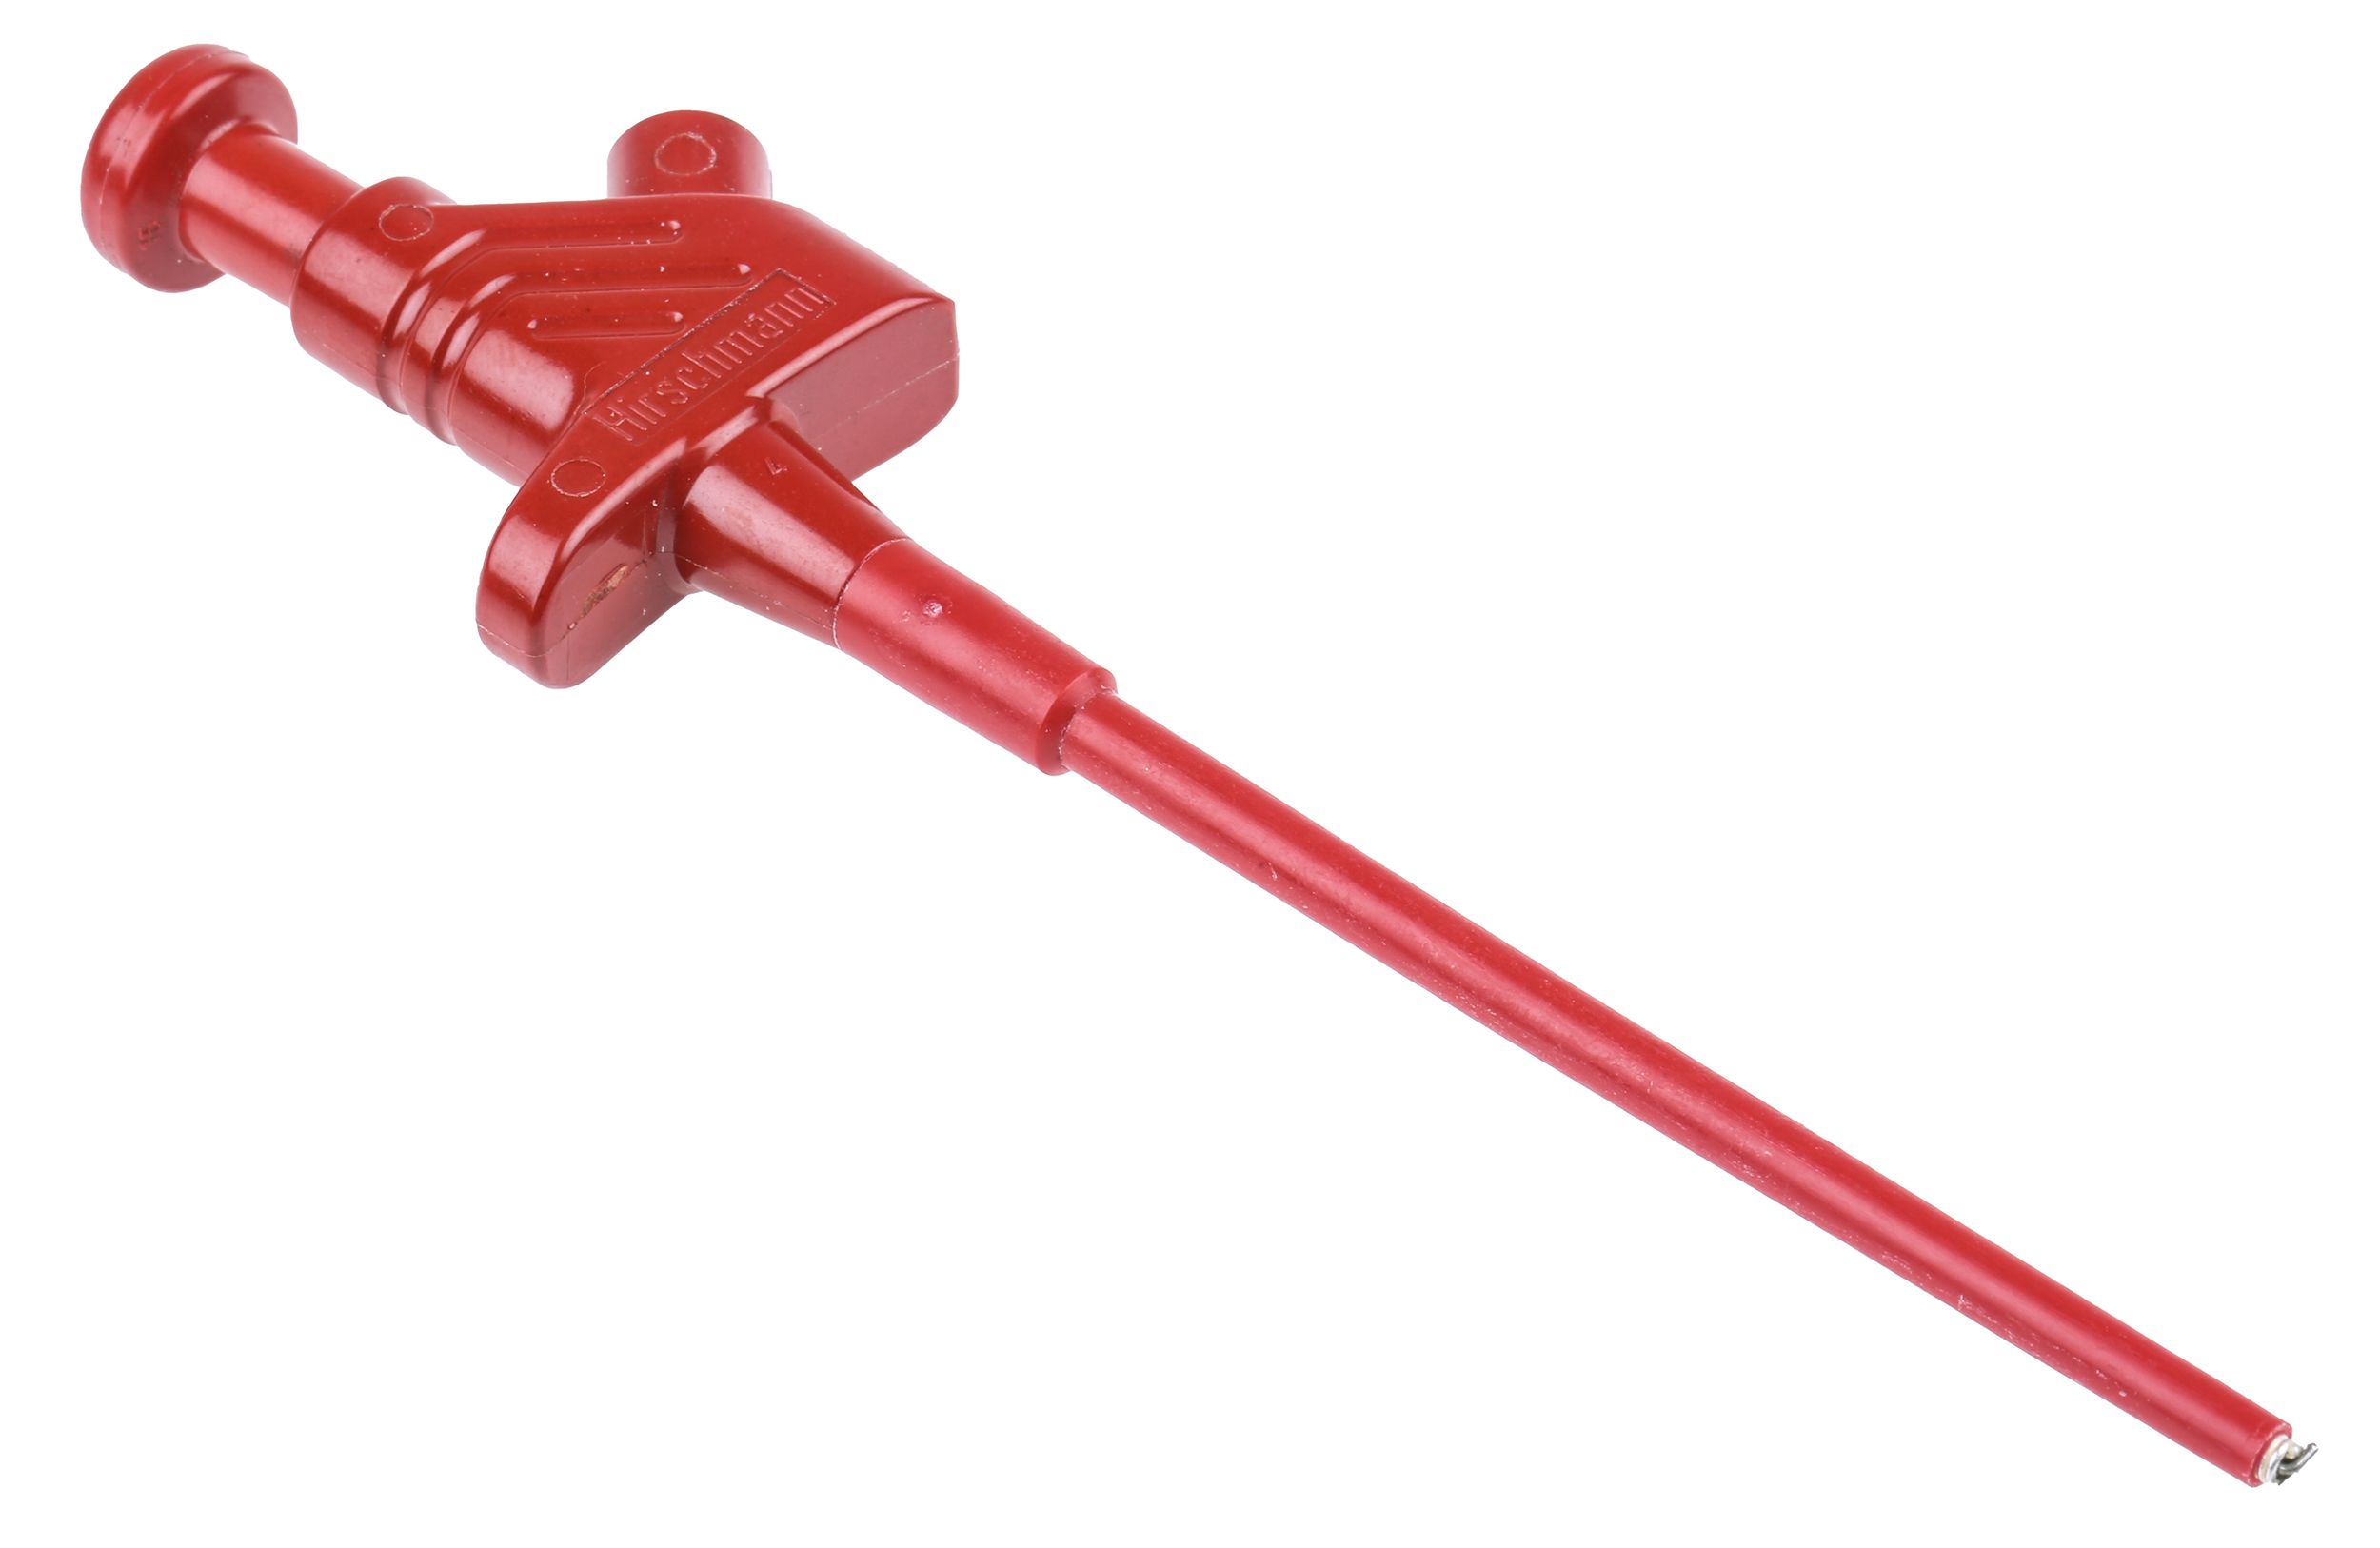 Hirschmann Test & Measurement Red Grabber Clip, 4A, 60V, 3.5mm Tip, 4mm Socket, PA Insulation